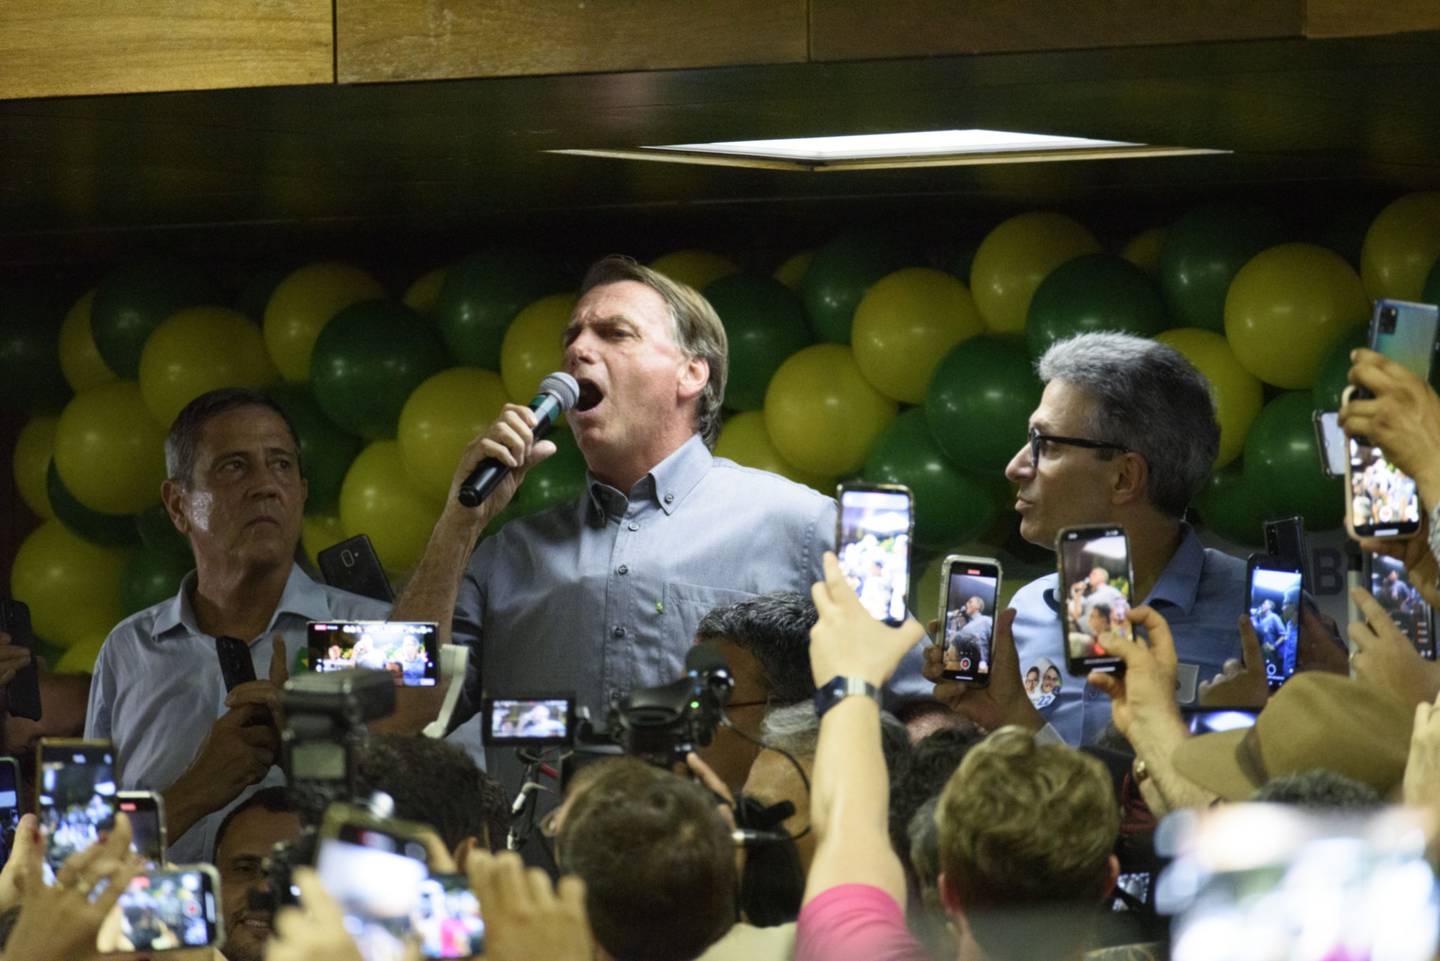 Jair Bolsonaro, presidente de Brasil, centro, durante un evento en Belo Horizonte, estado de Minas Gerais, Brasildfd